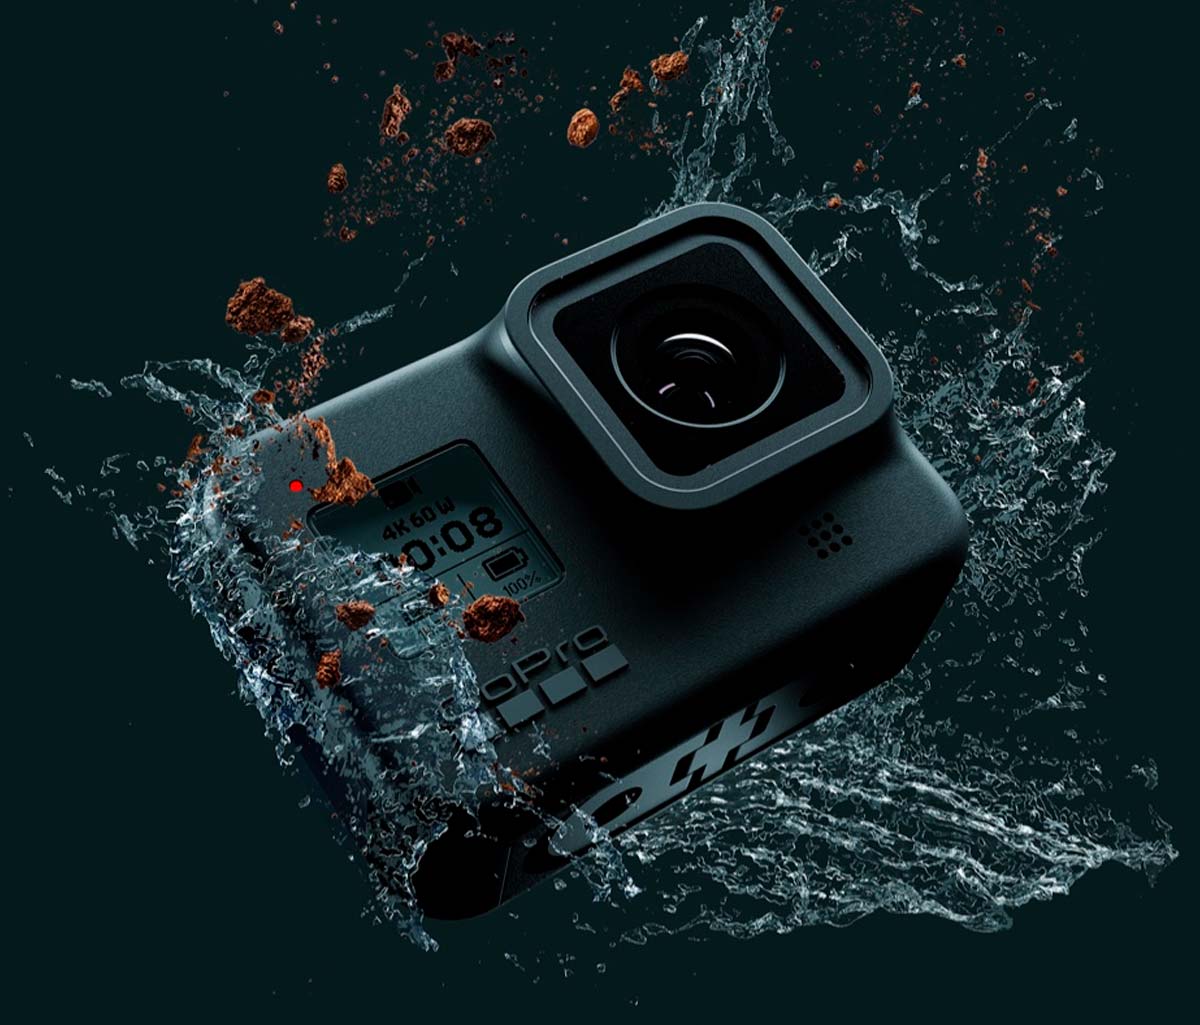 En TodoMountainBike: GoPro bate récords de ventas online con la cámara HERO 8 Black y sus nuevos accesorios